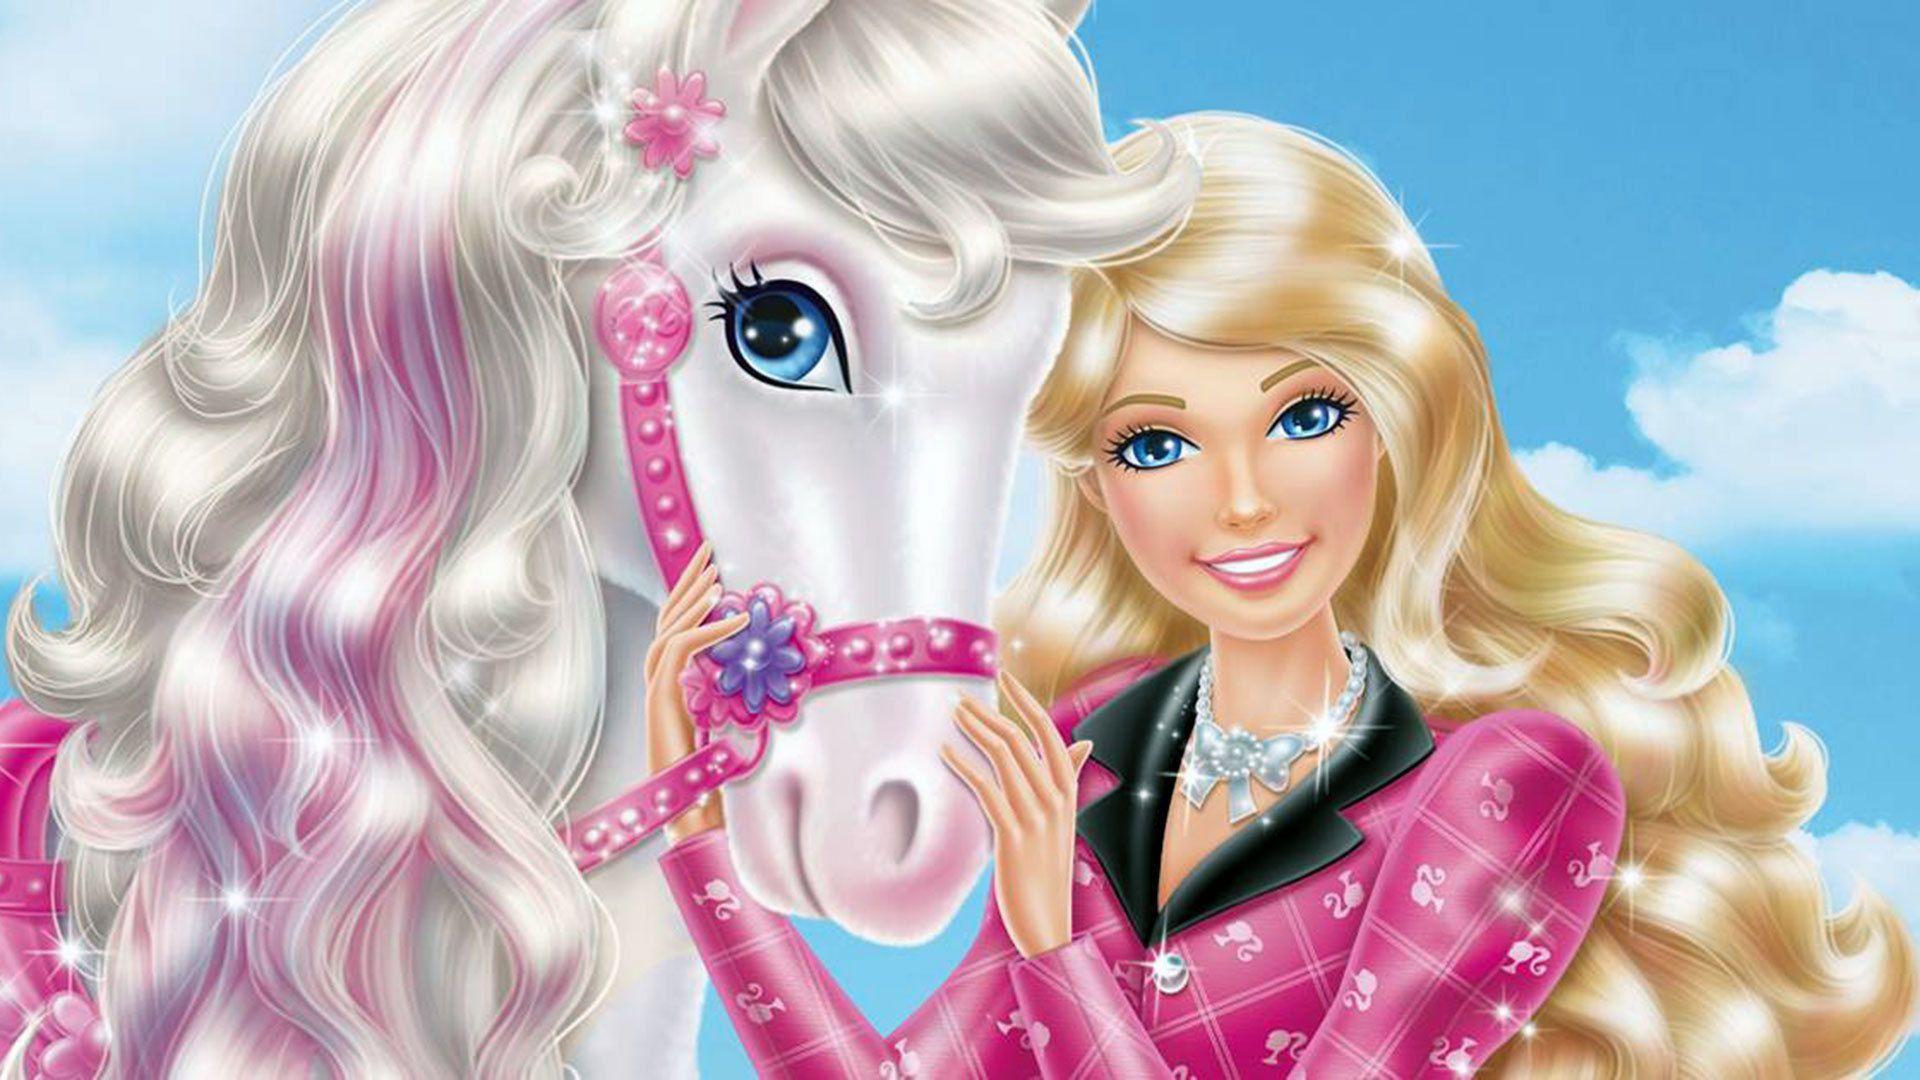 Barbie Sisters In Pony Tale Wallpaper